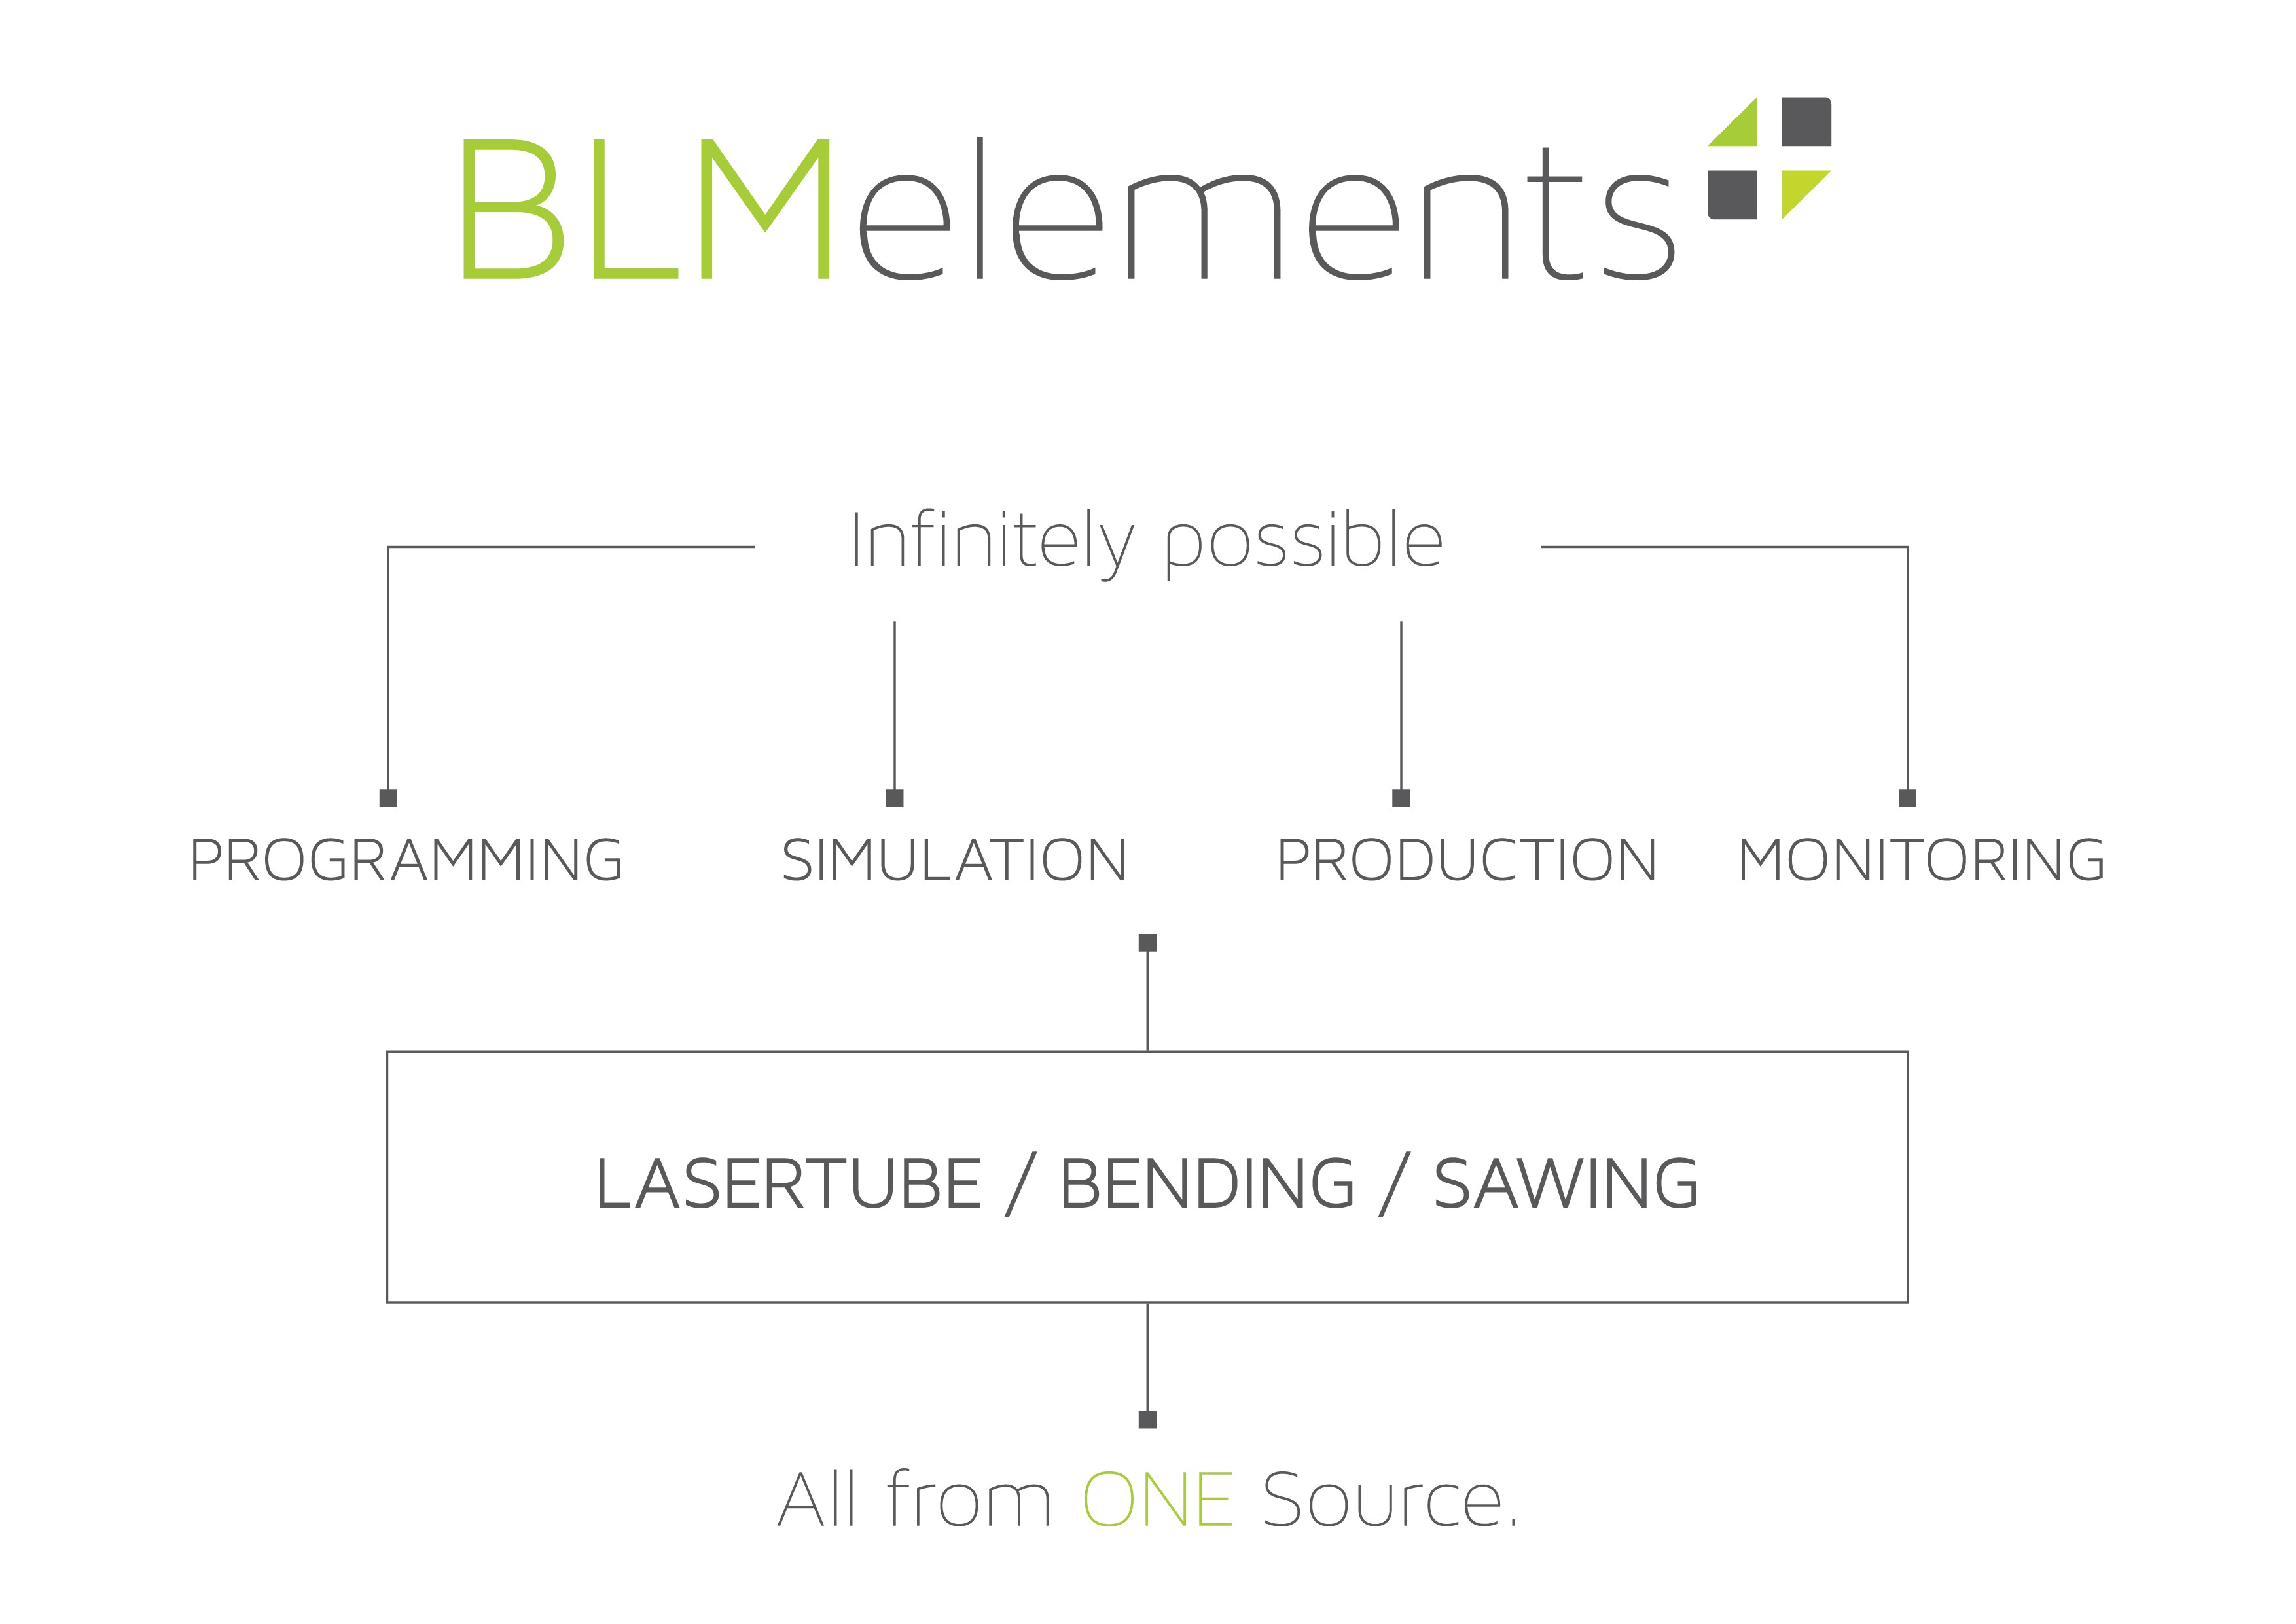 BLMelements integriert die Produktion zu einem einstufigen Prozess